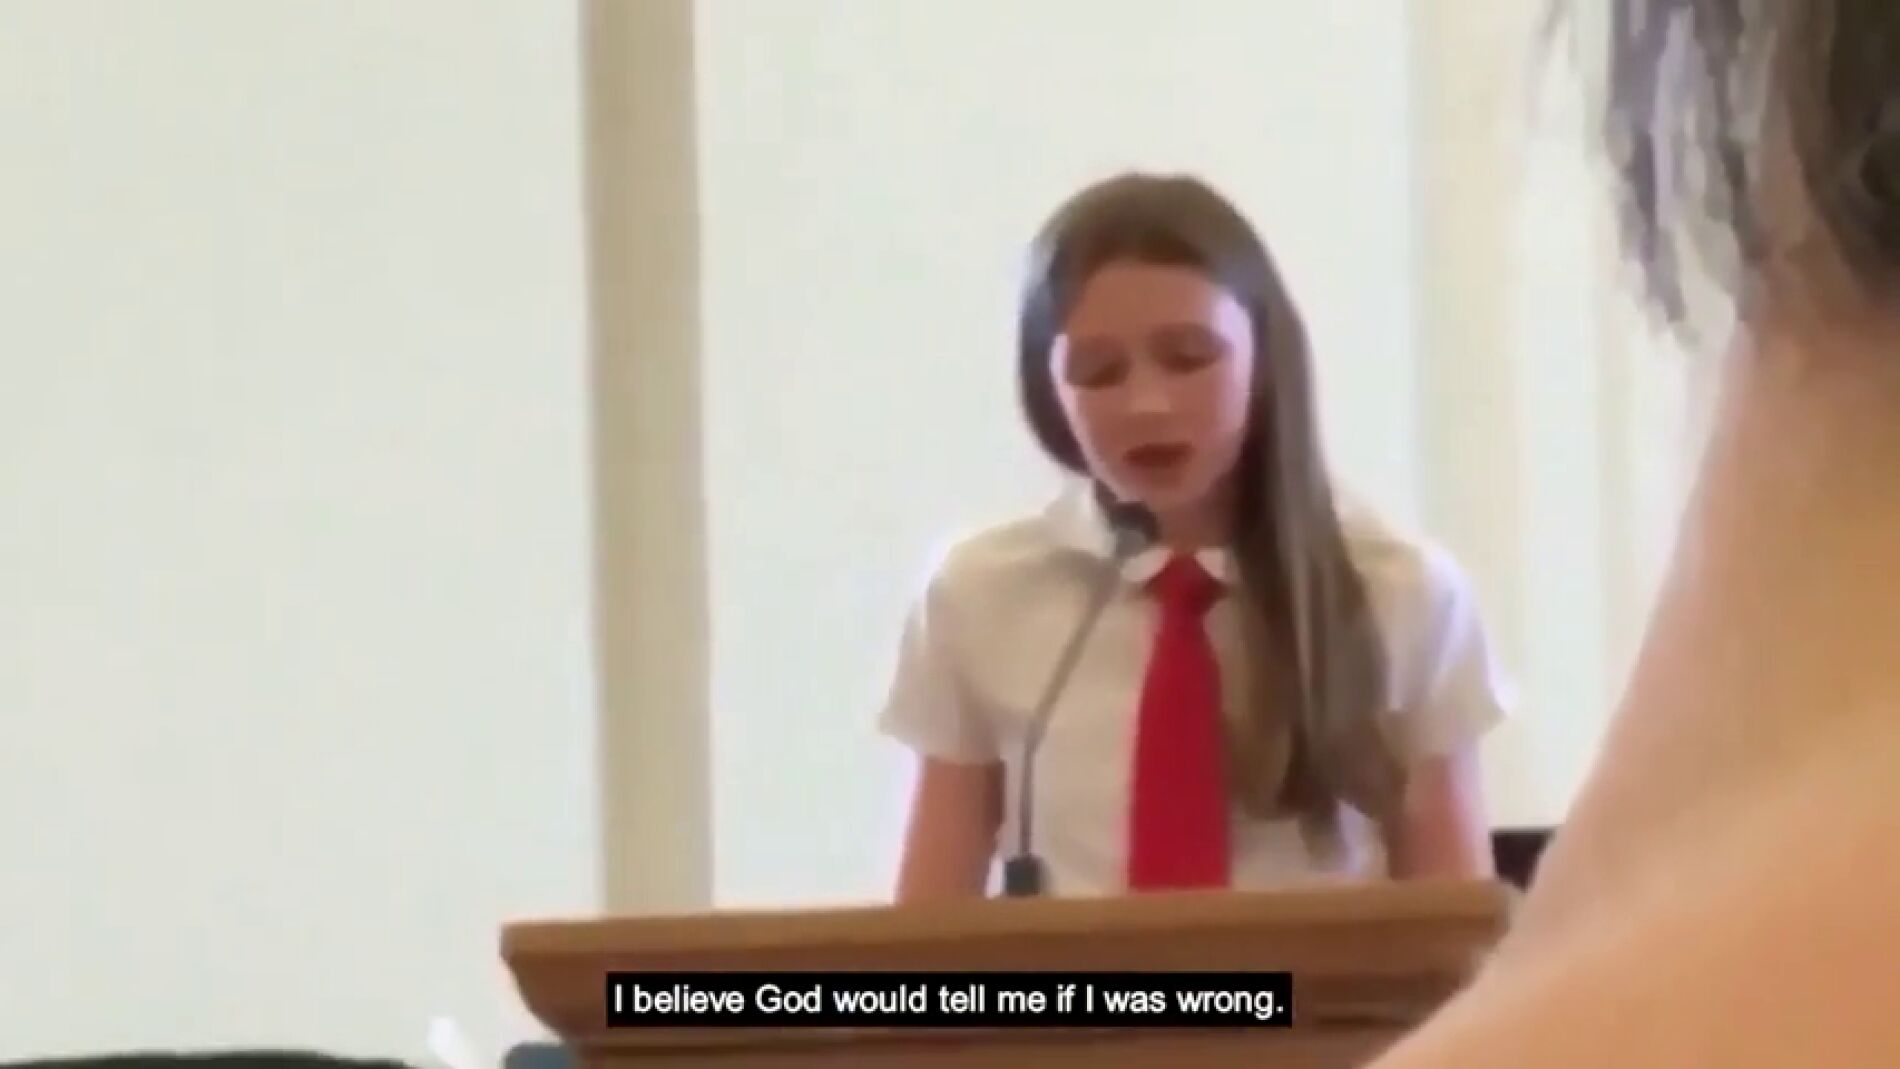 Una niña de 12 años confiesa ser lesbiana ante su iglesia mormona y le cortan el micrófono foto